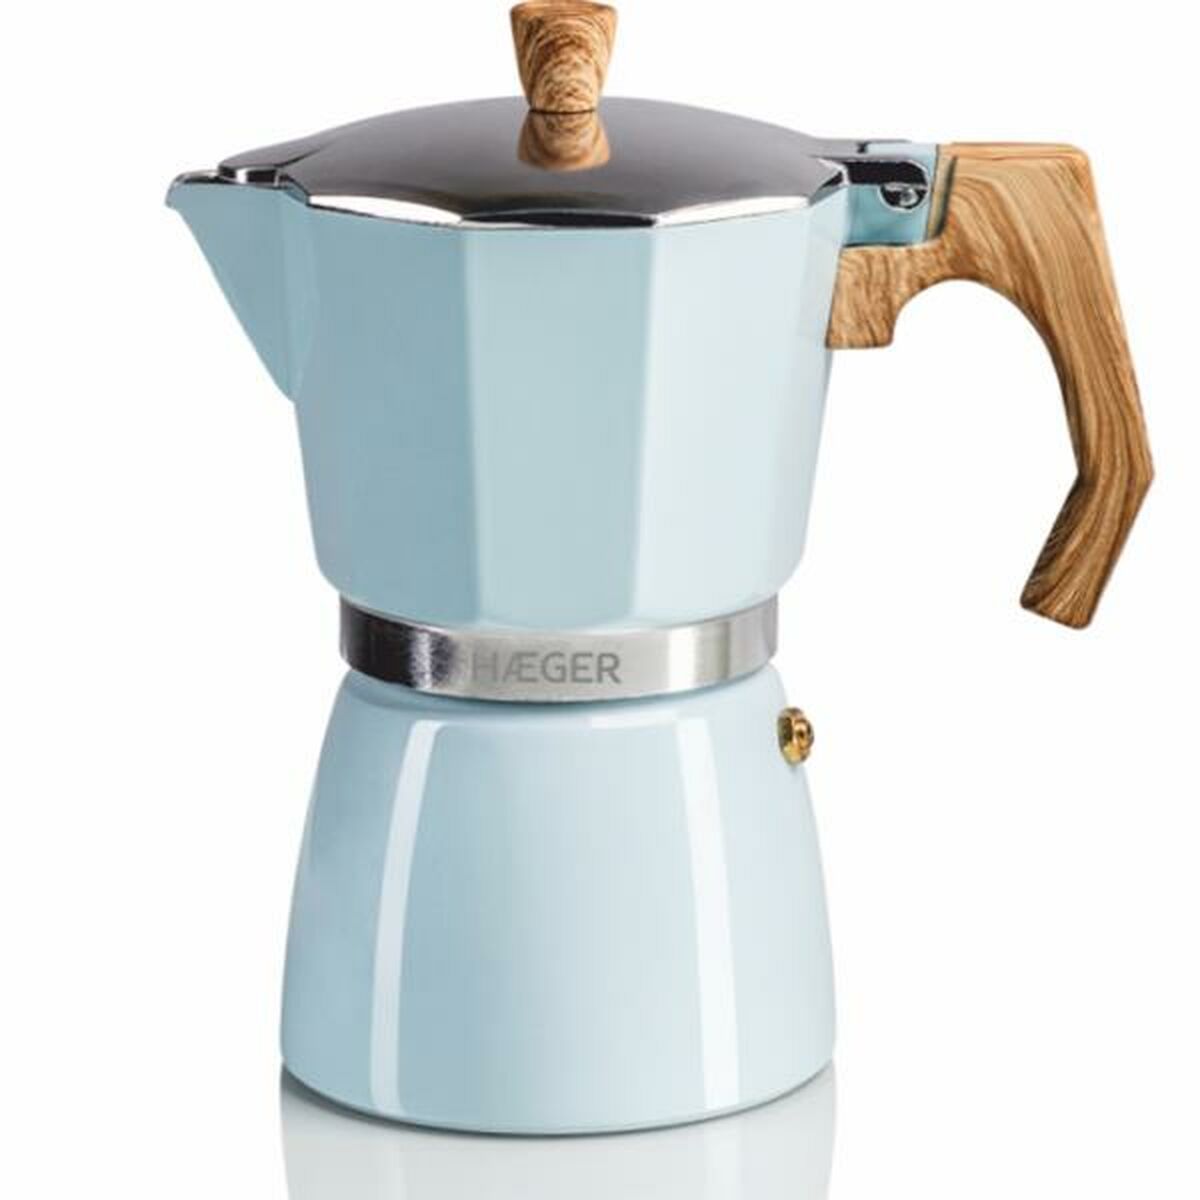 Italiaanse Koffiepot Haeger CP-06A.011A